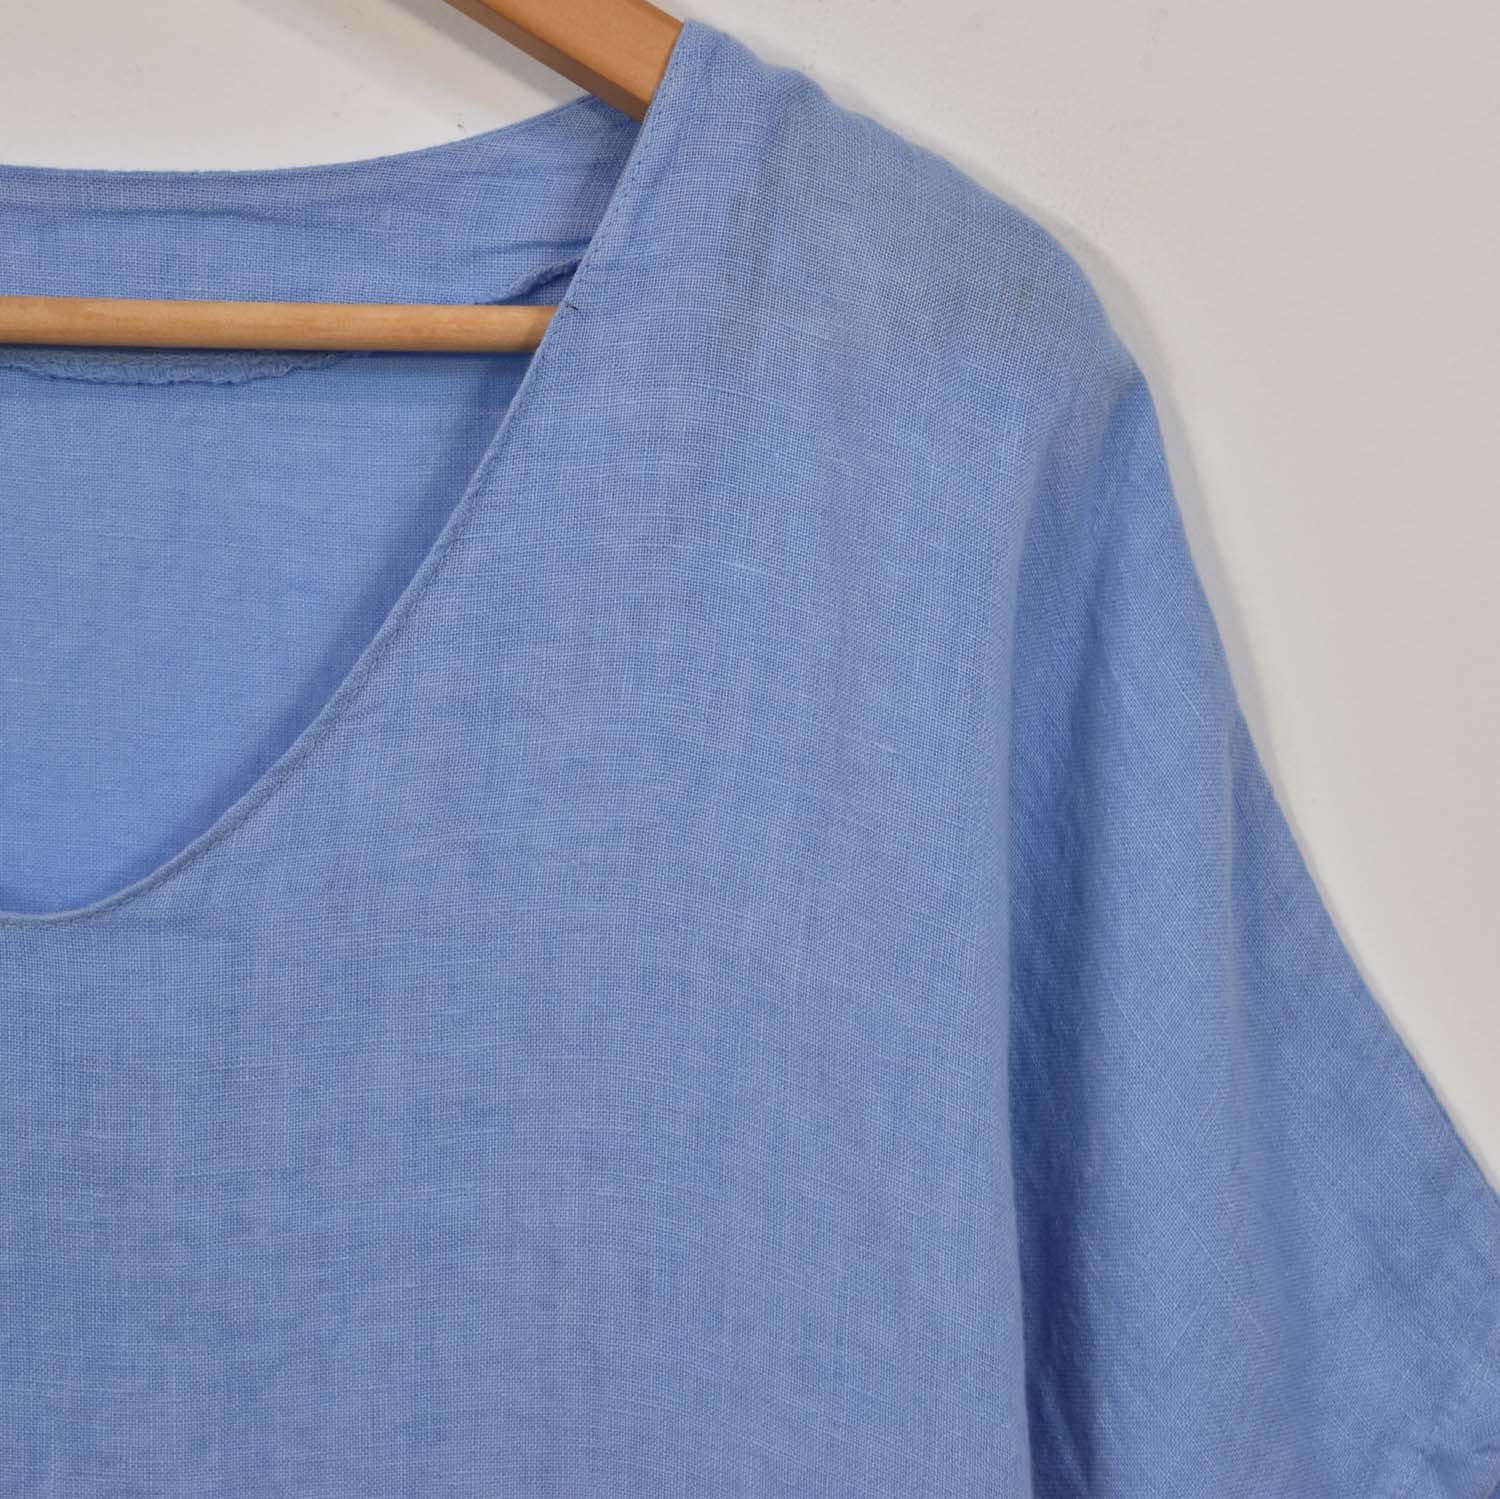 Blue V-neck linen blouse